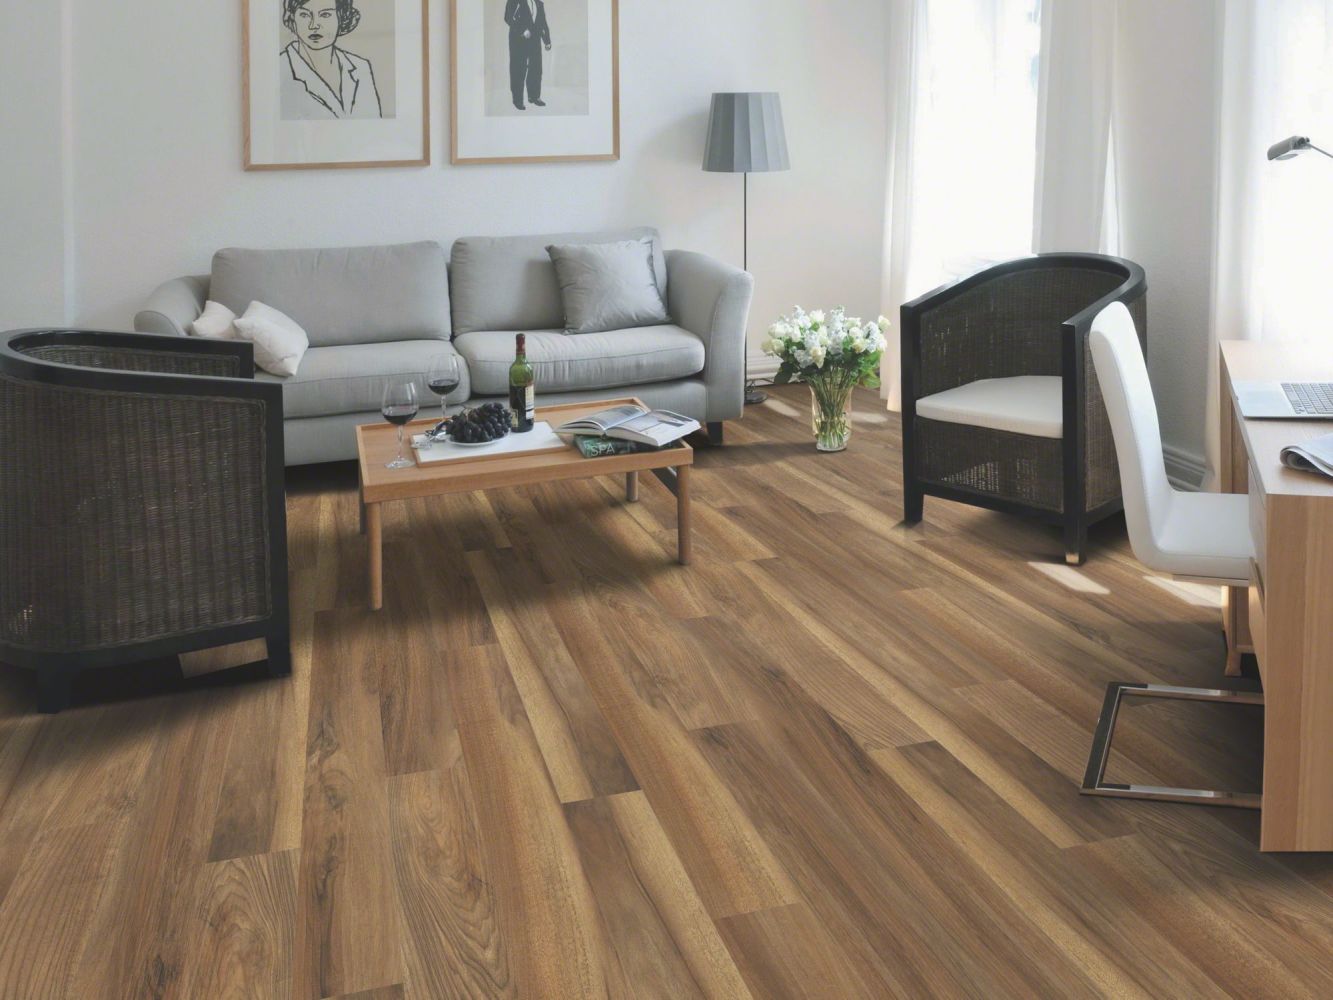 Shaw Floors Resilient Residential Endura Plus Ginger Oak 00802_0736V